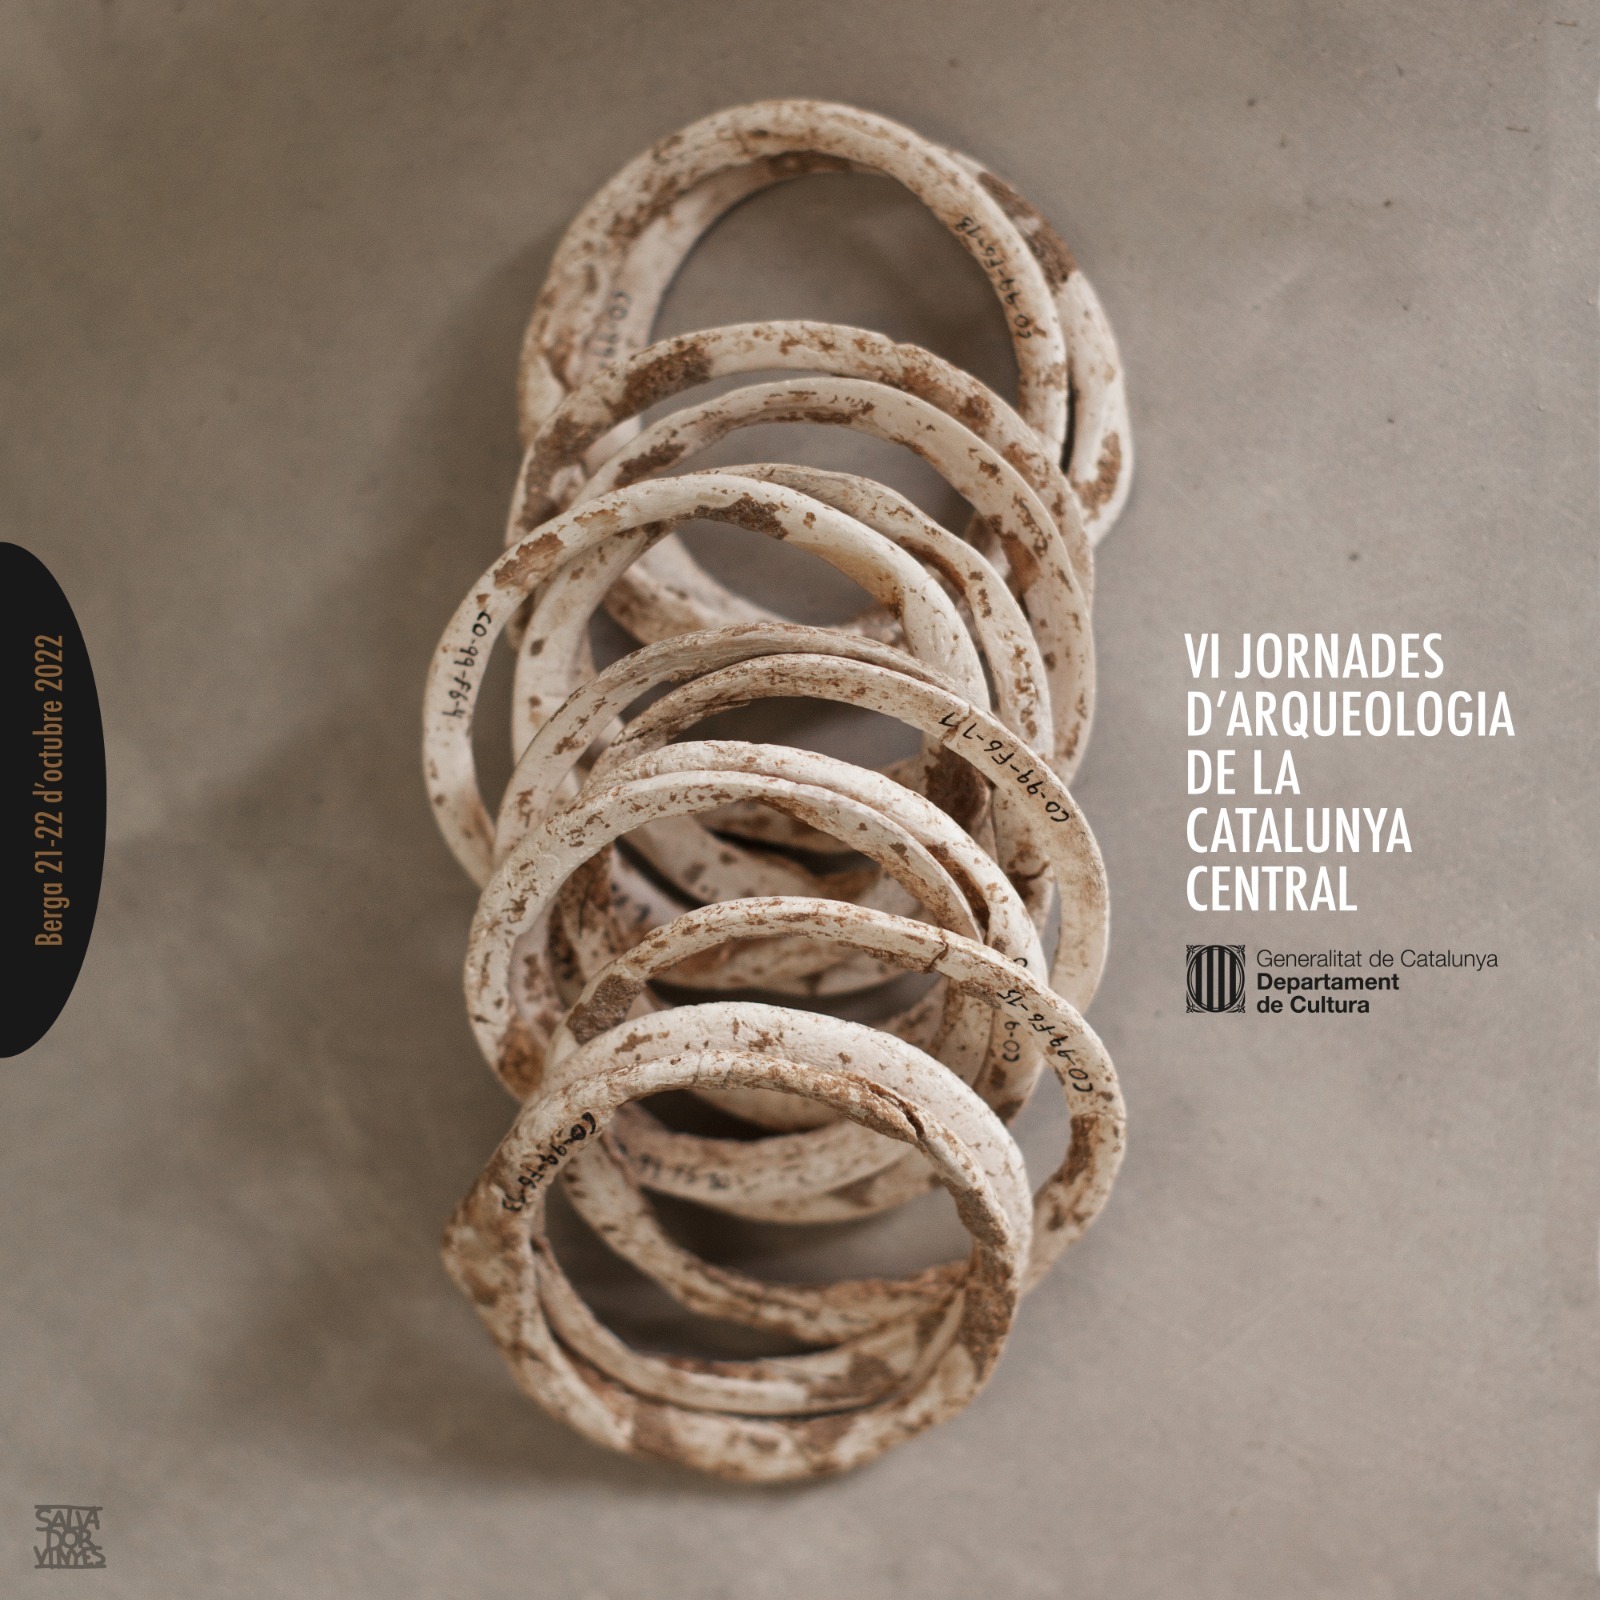 Oberta la inscripció per participar en les VI Jornades d'Arqueologia de la Catalunya Central